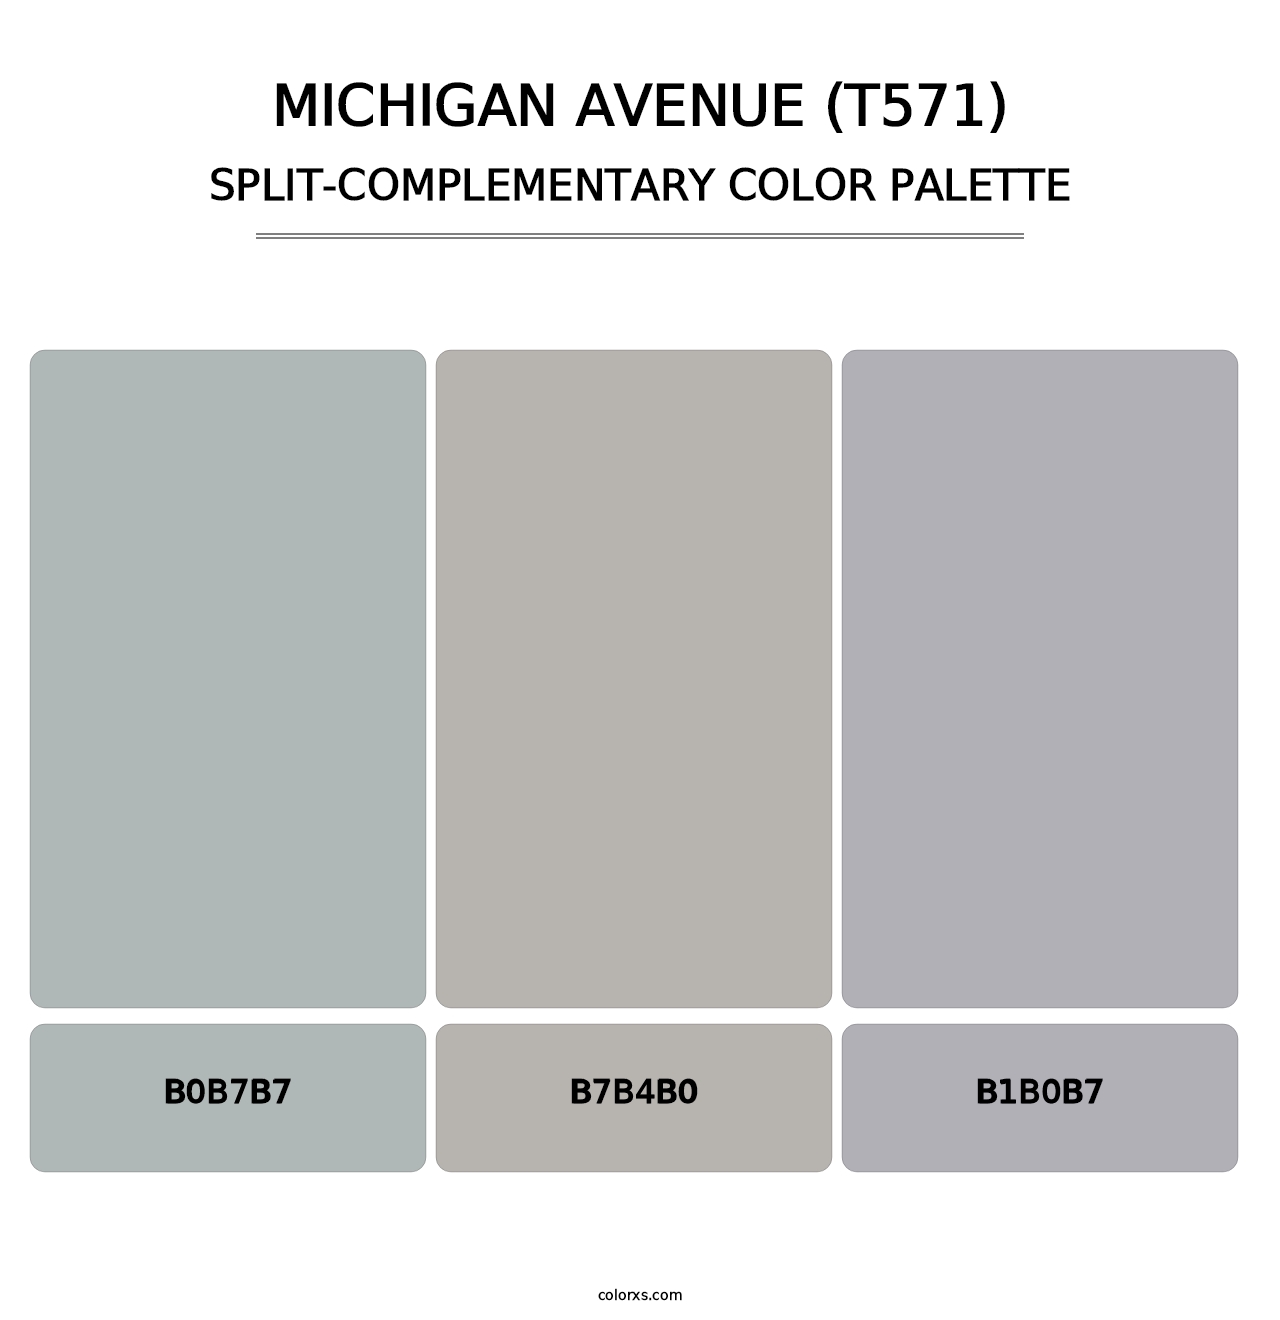 Michigan Avenue (T571) - Split-Complementary Color Palette